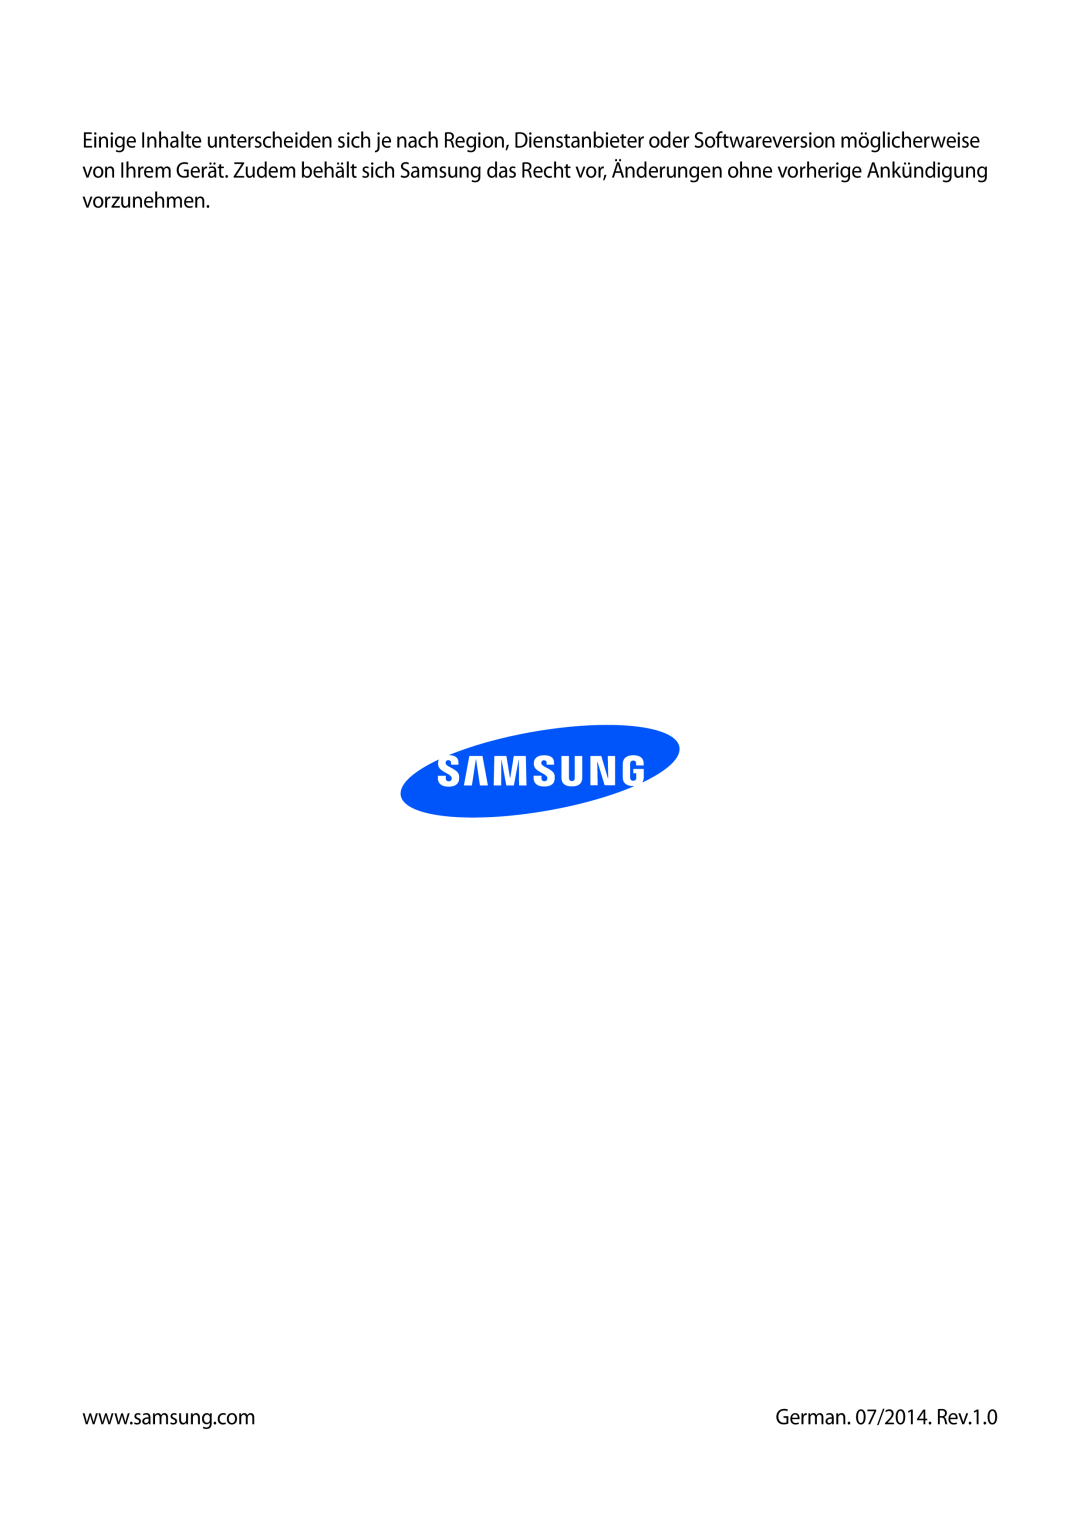 Samsung SM-V7000ZKADBT, SM-V7000ZOATUR, SM-V7000ZAADBT, SM-V7000ZWADBT, SM-V7000ZGADBT manual German. 07/2014. Rev.1.0 